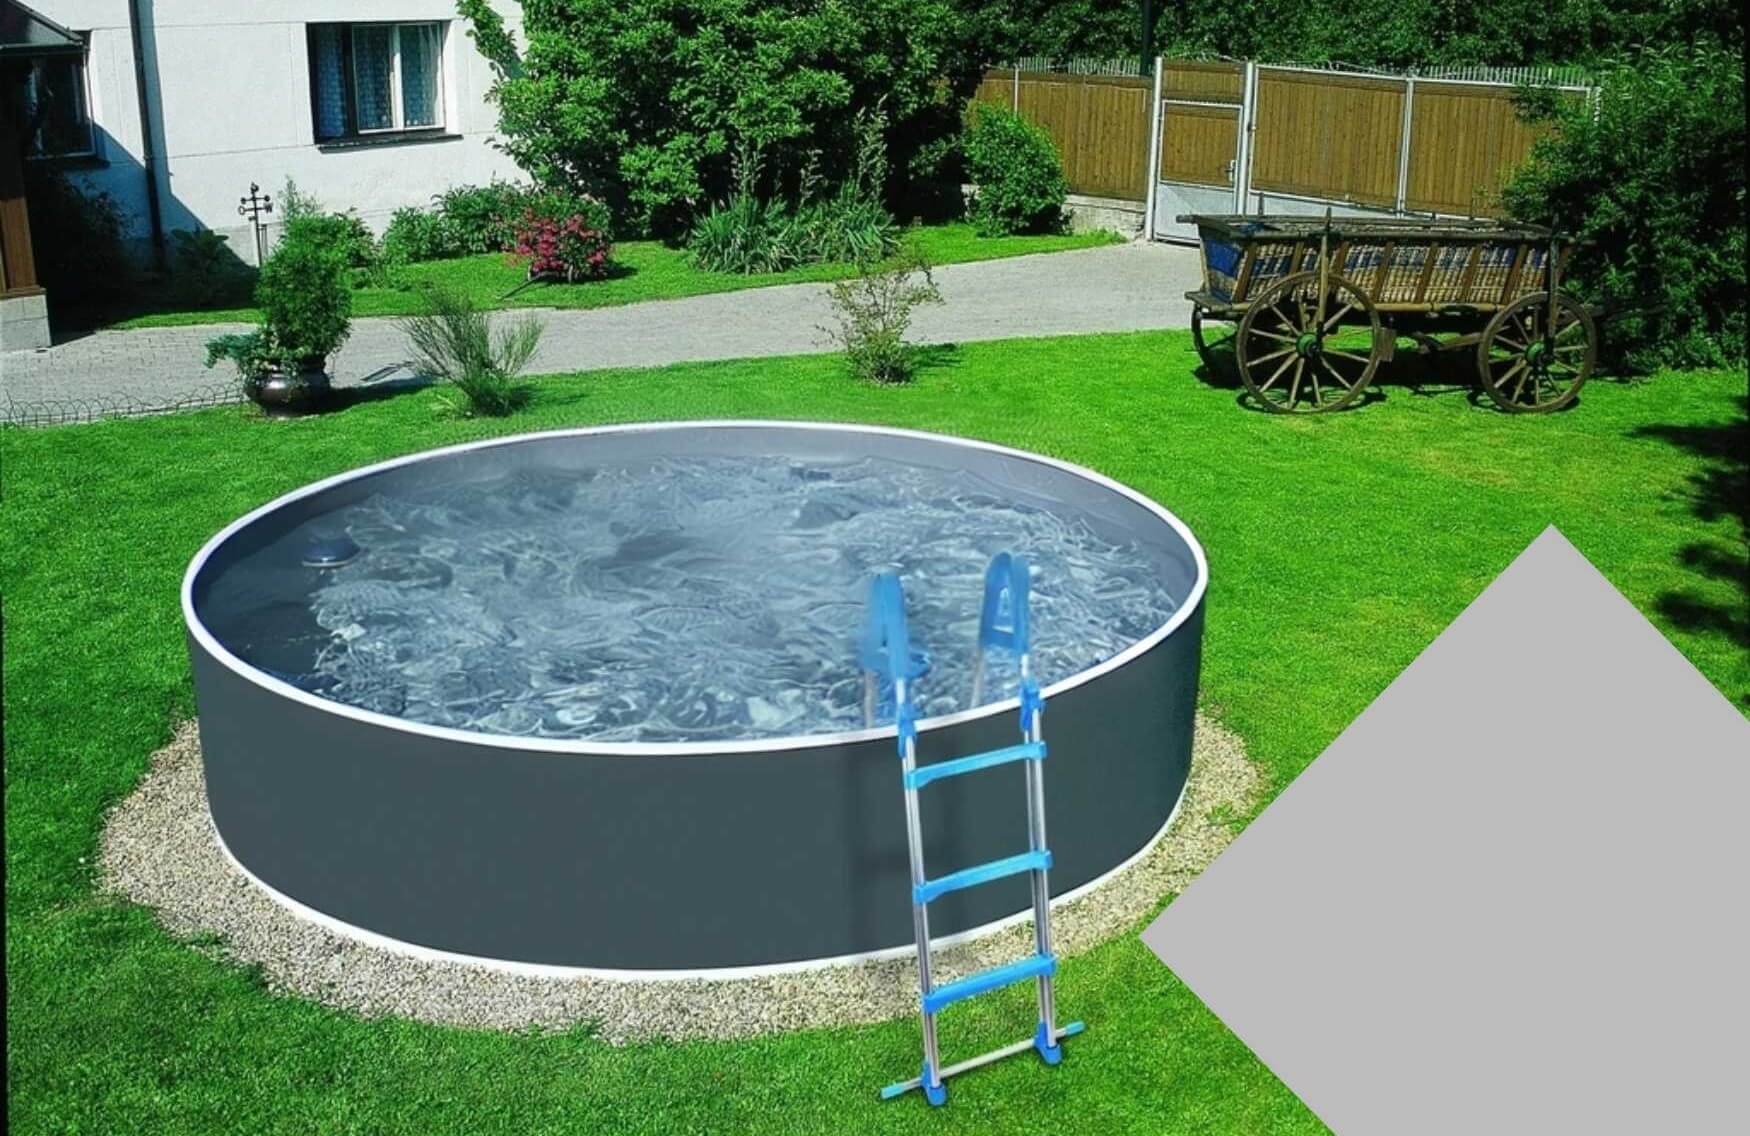 Planet Pool Náhradní bazénová fólie Grey pro bazén průměr 4,6 m x 1,2 m - šedá barva